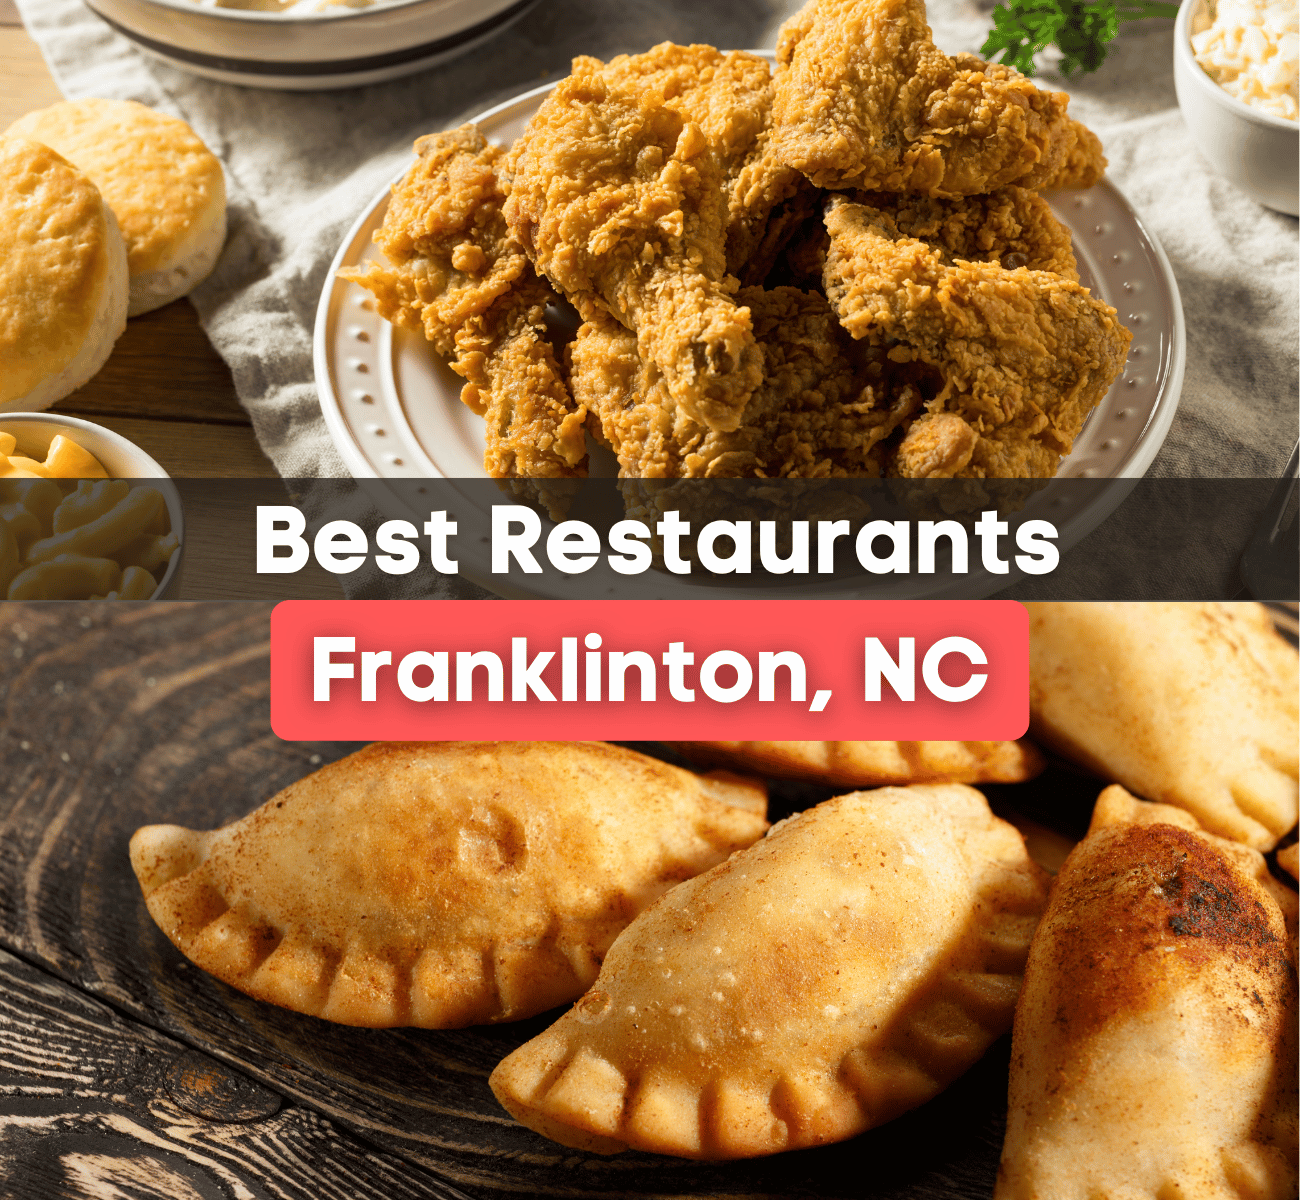 best restaurants franklinton nc graphic with fried chicken and empanadas